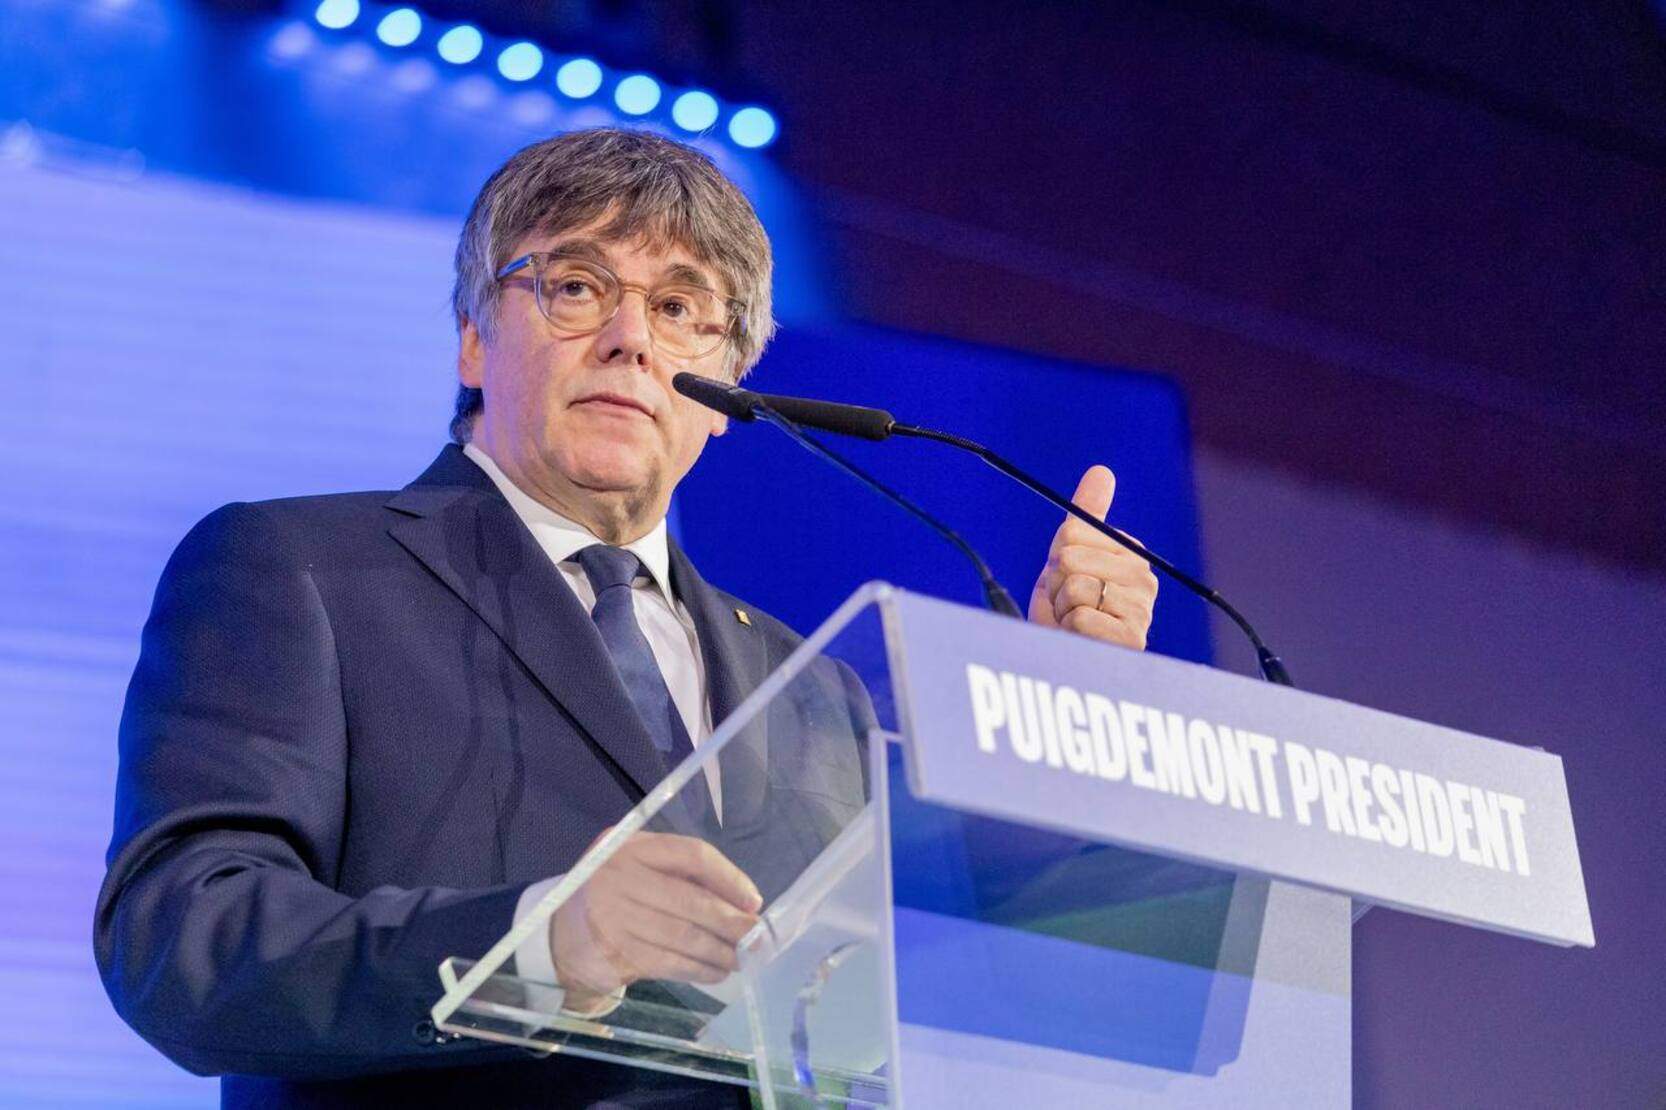 Puigdemont acusa al PSC de deshumanización contra él: "Extiende indecentemente mentiras de las cloacas"